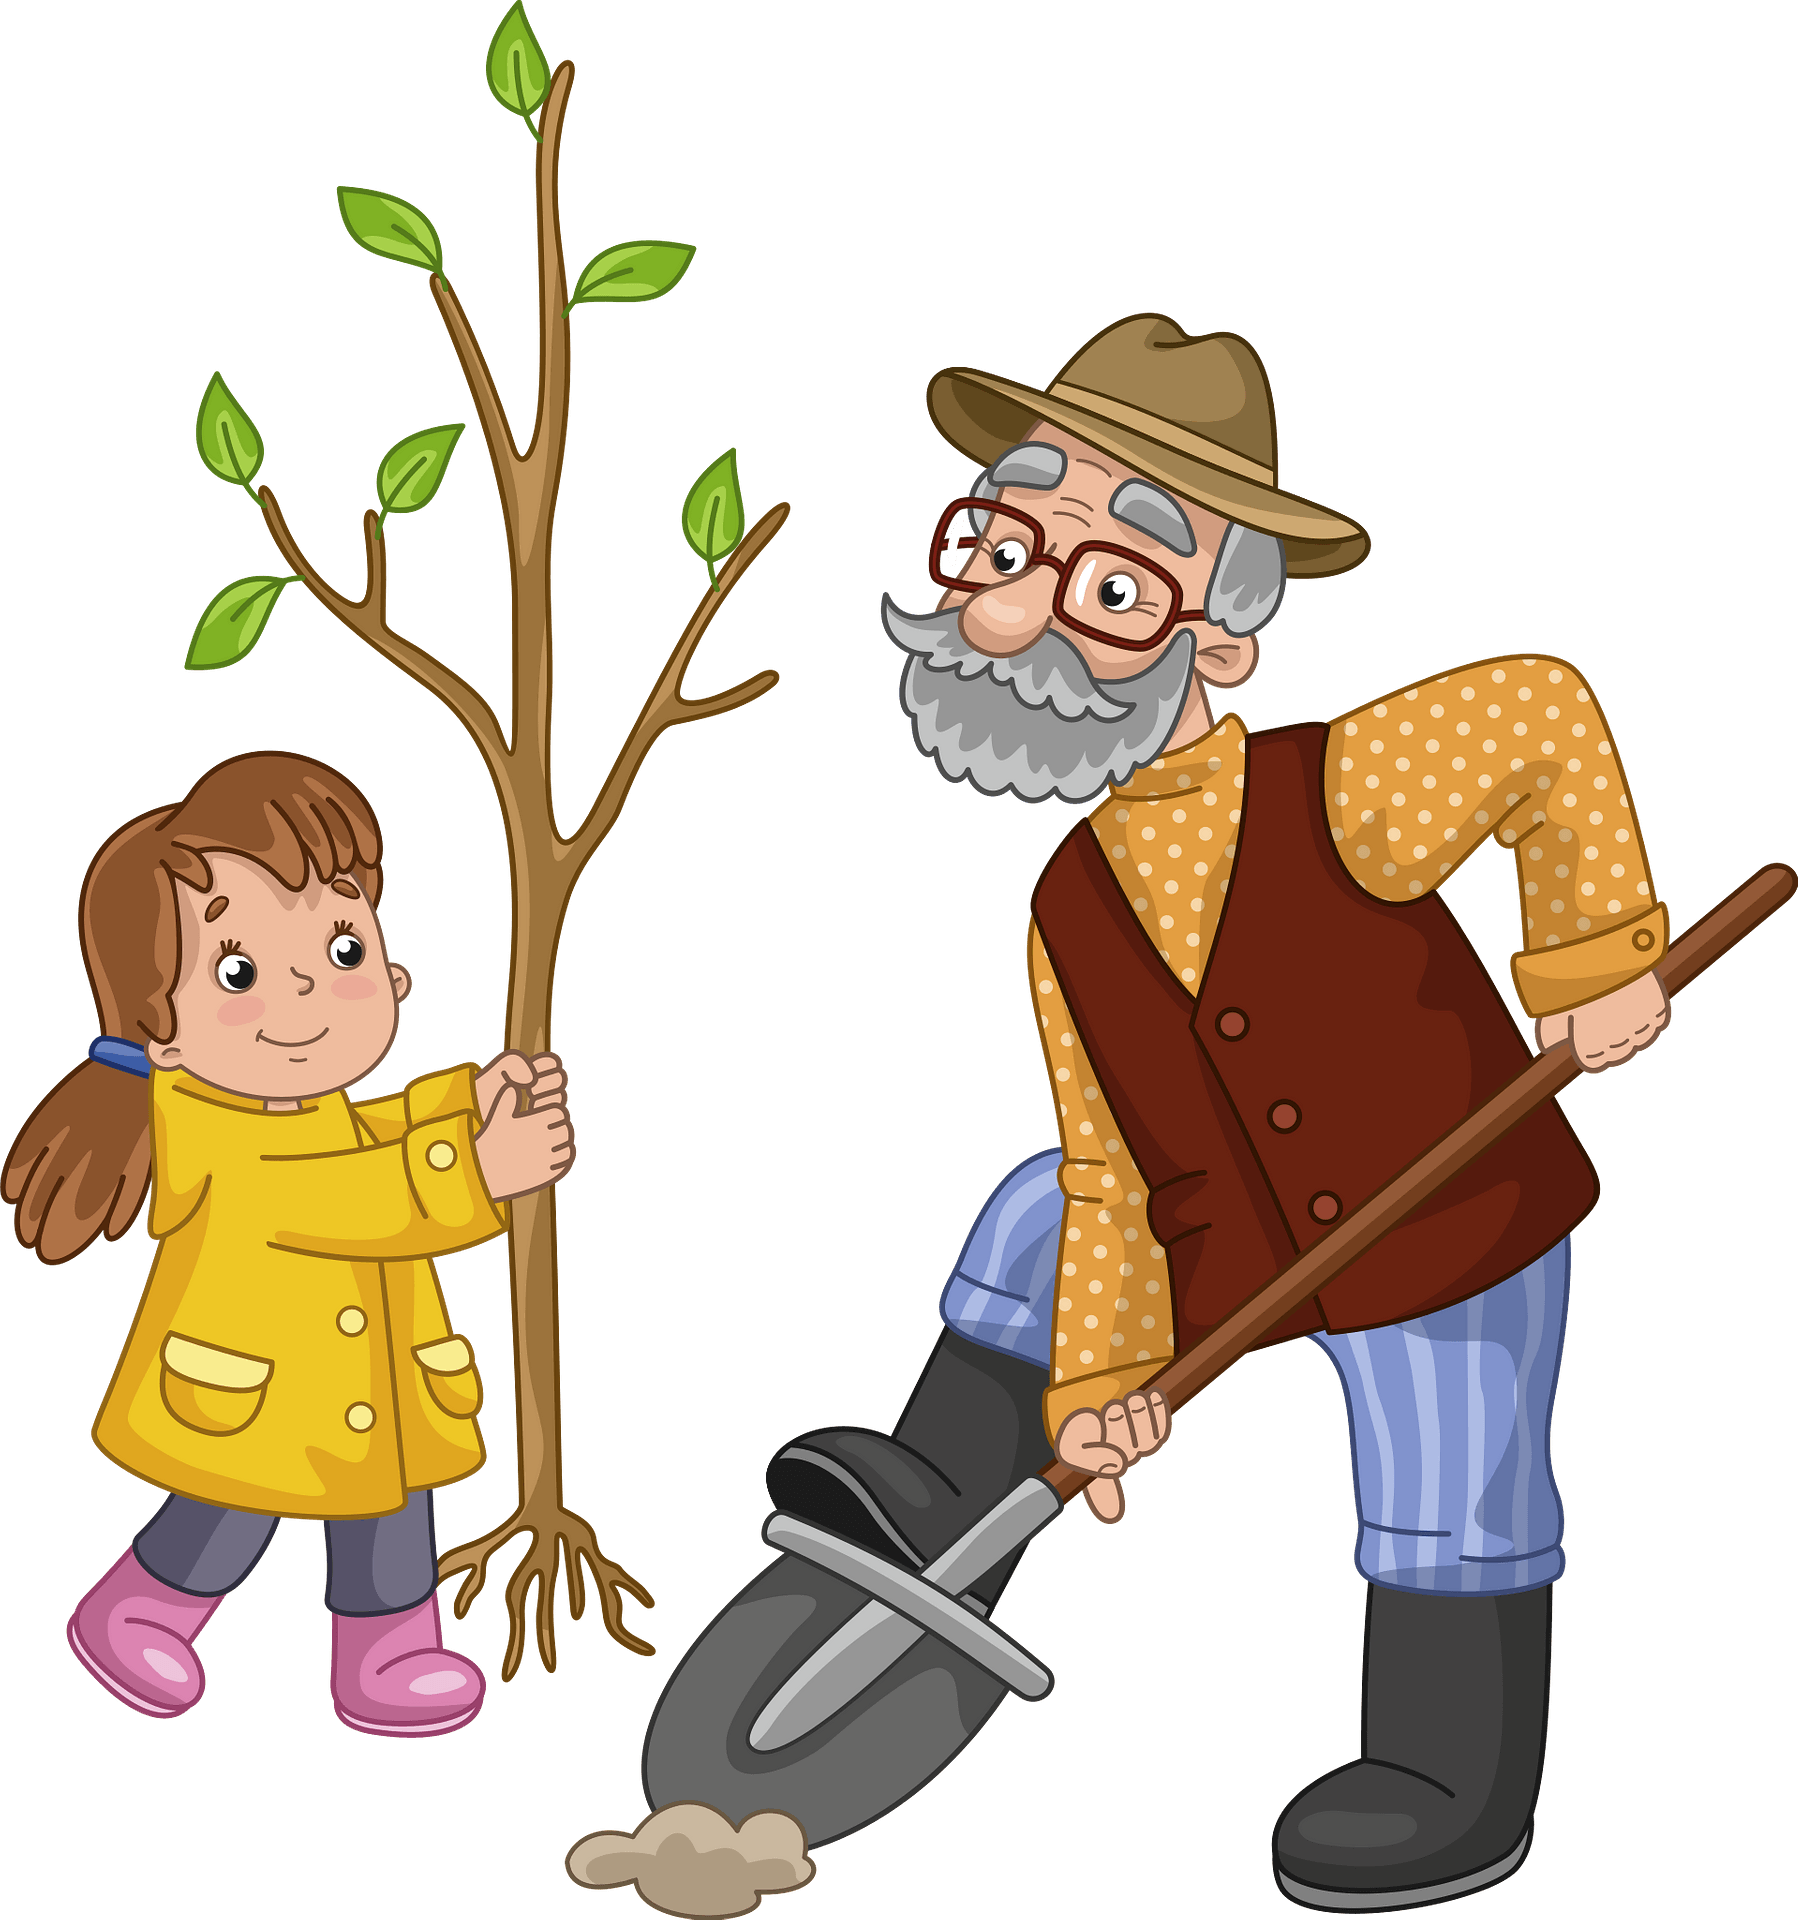 Картинка дедушка. Детям о дедушке. Картина дедушка для детей. Дед с лопатой. Дедушка сажает дерево.